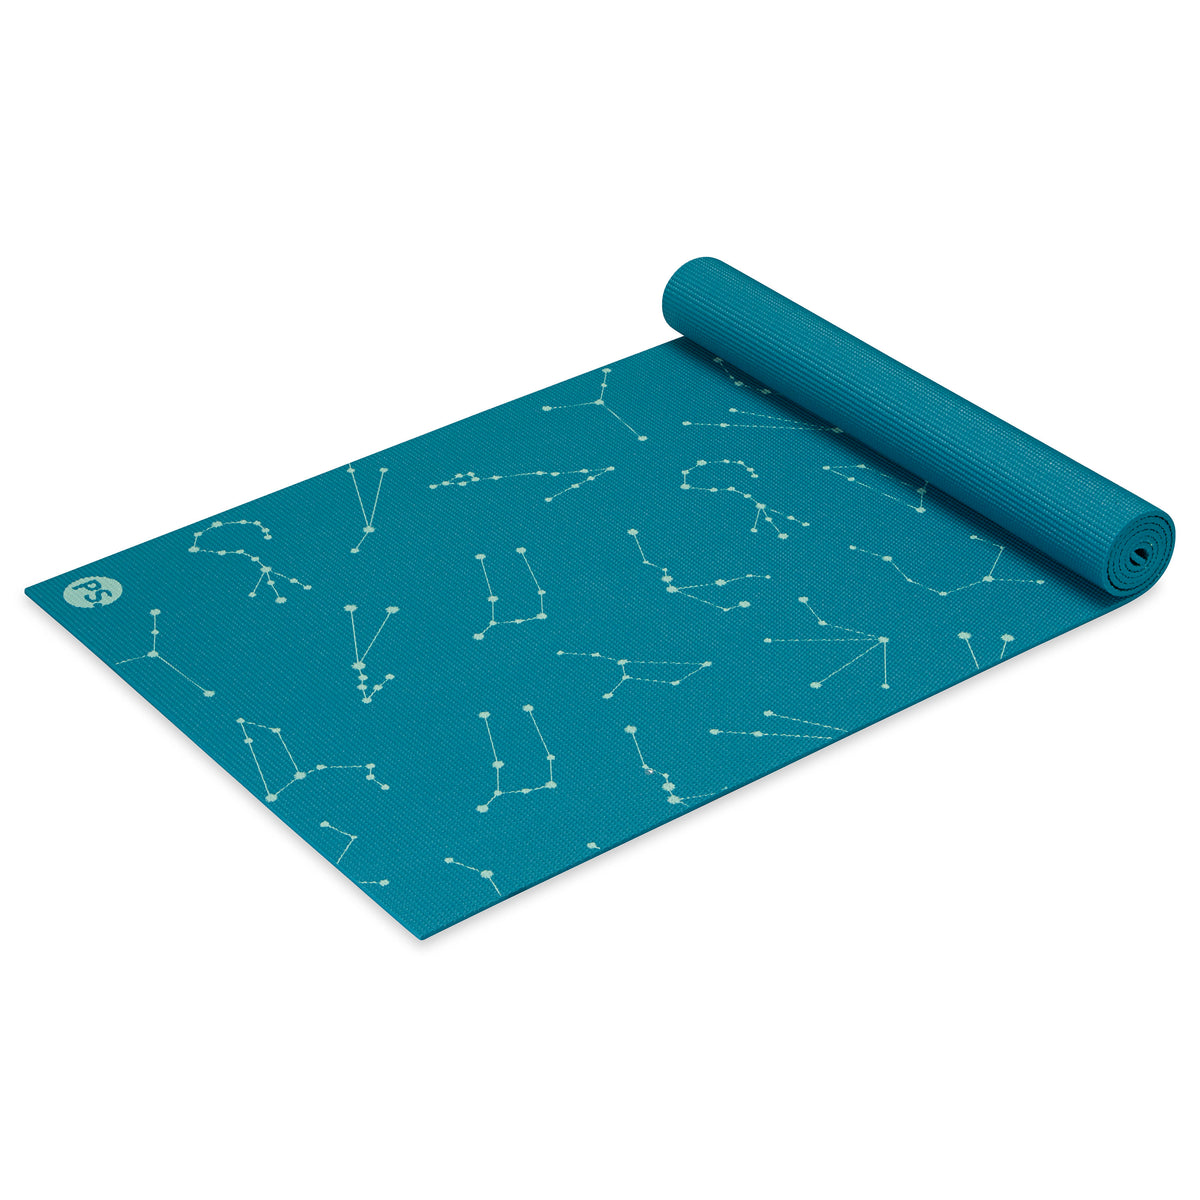 Gaiam Premium Print Reversible Yoga Mat Kaleidoscope 6mm